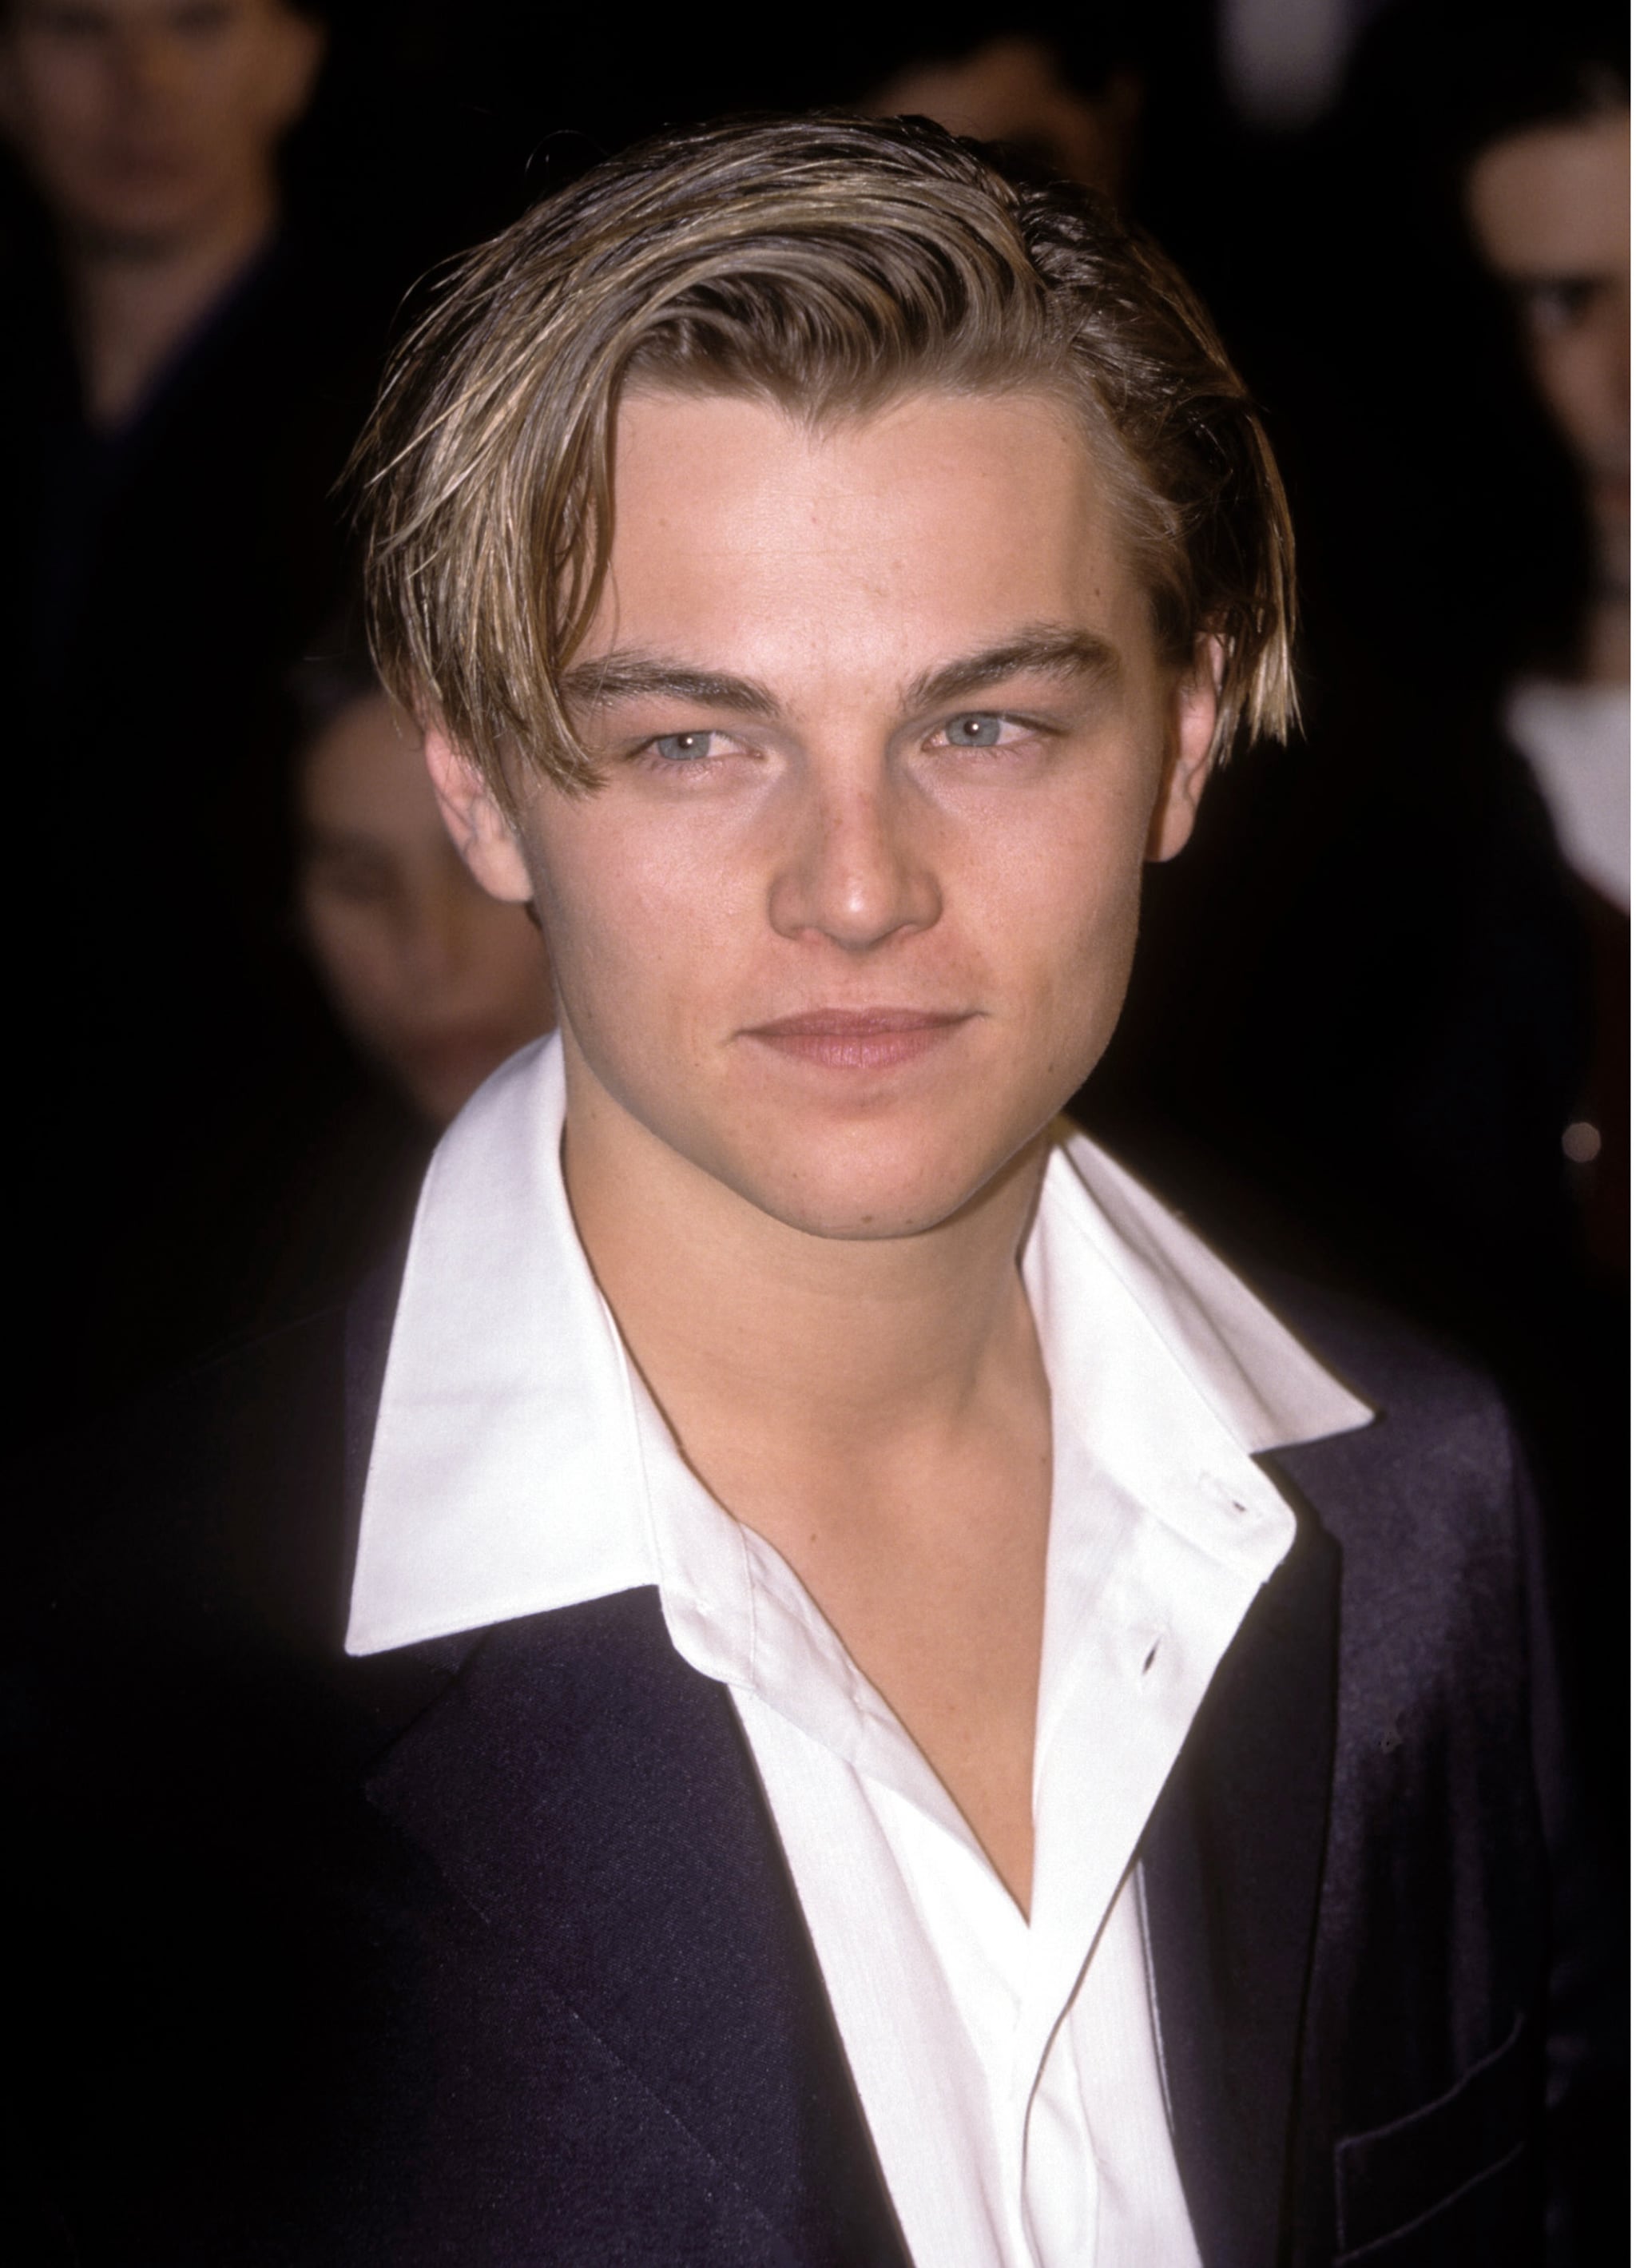 Pictures Of Leonardo Dicaprio As A Teen Heartthrob Popsugar Celebrity